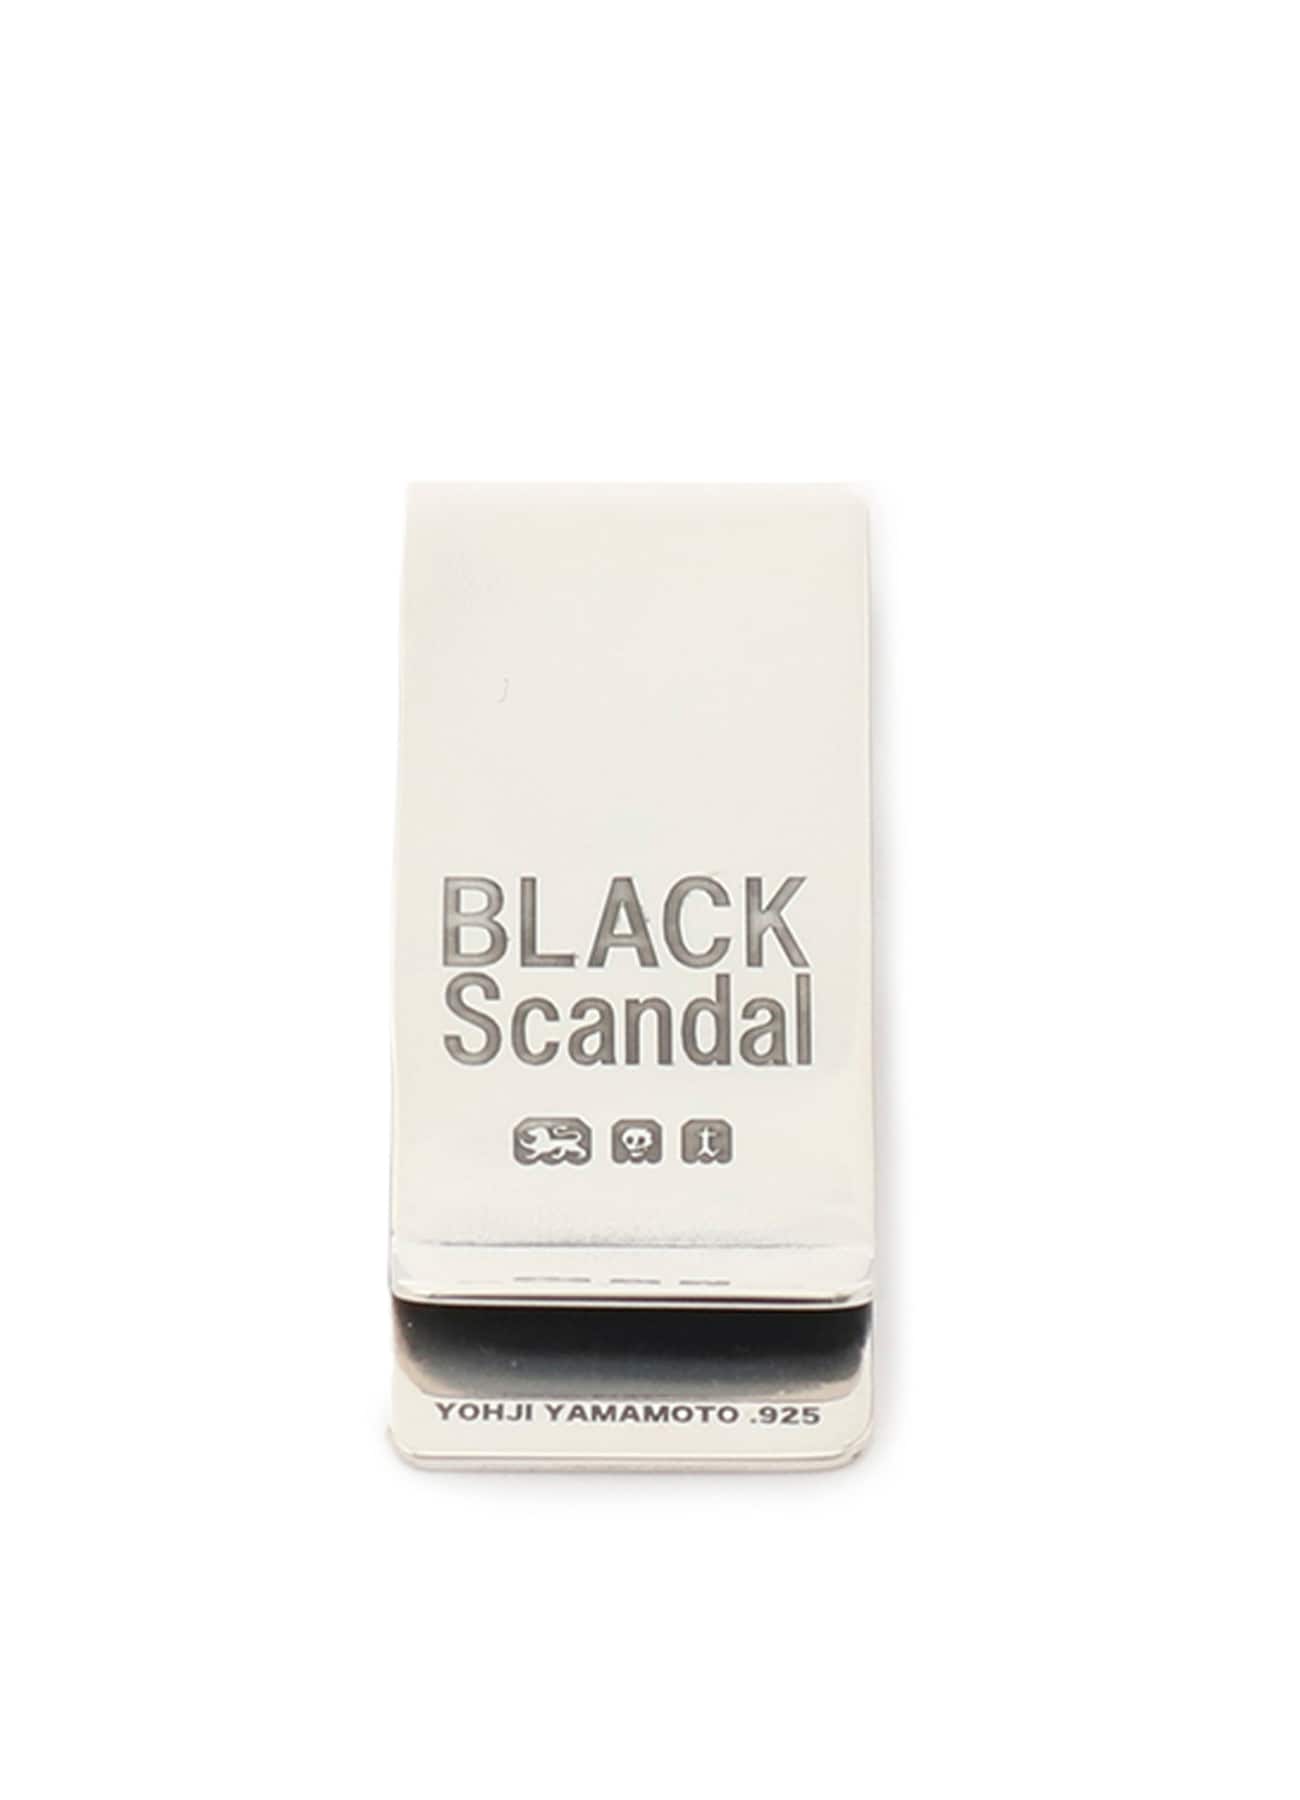 BLACK Scandal SILVER925 マネークリップ